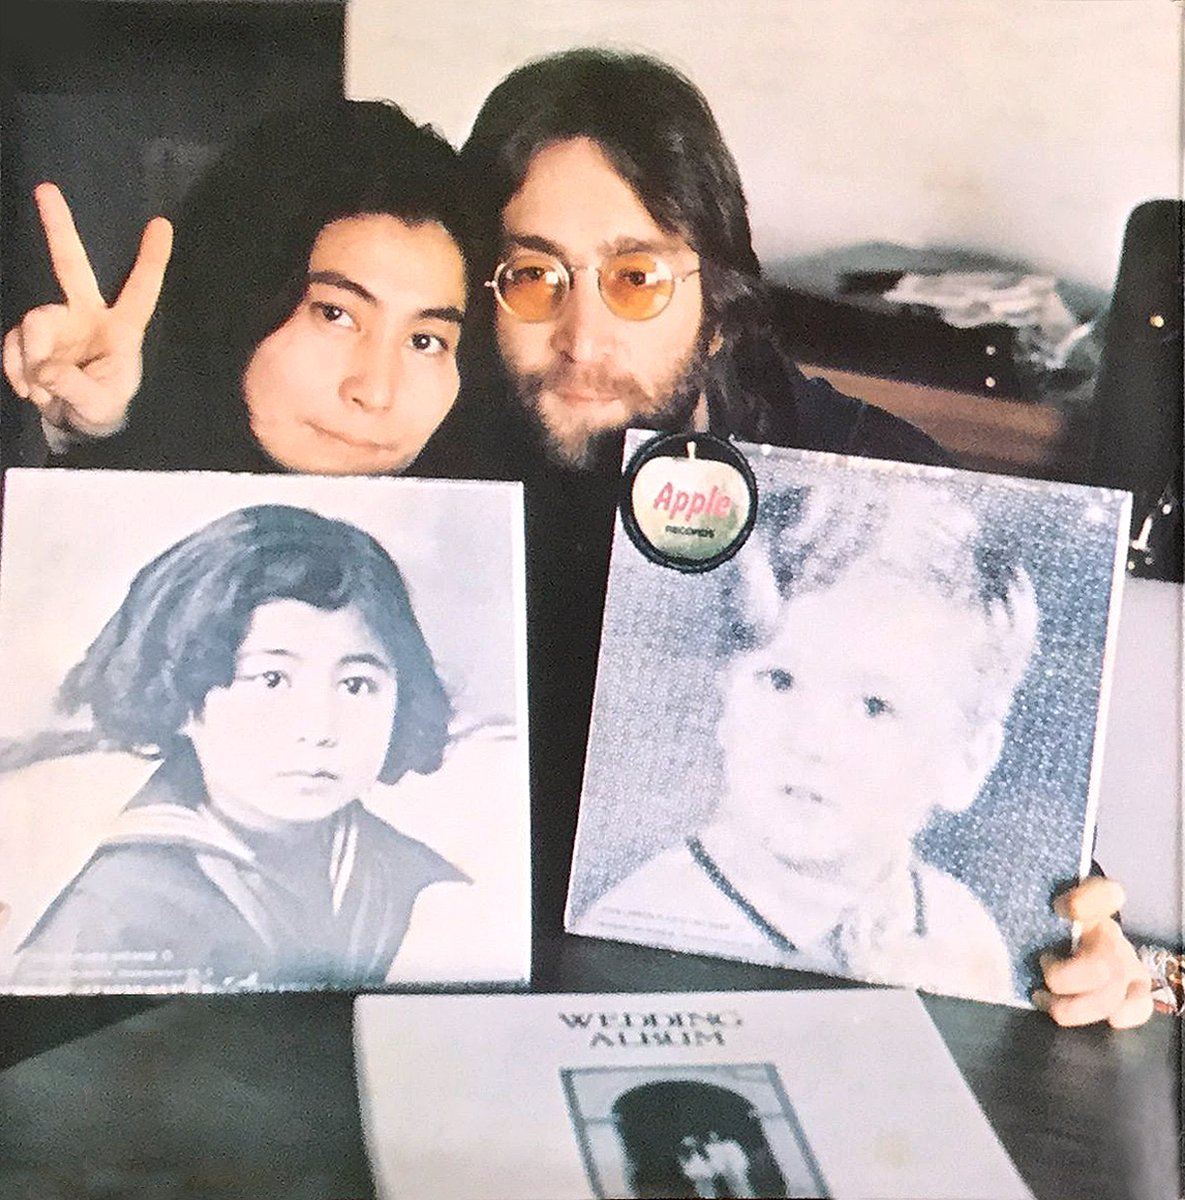 会期延長2 18まで Double Fantasy John Yoko 今から50年前 1971年1月25日 ジョンとヨーコがお忍び来日中に帝国ホテルでインタビュー 詳しくはこちらで T Co Rsrif1jyrm ジョンレノン オノヨーコ ダブルファンタジー展